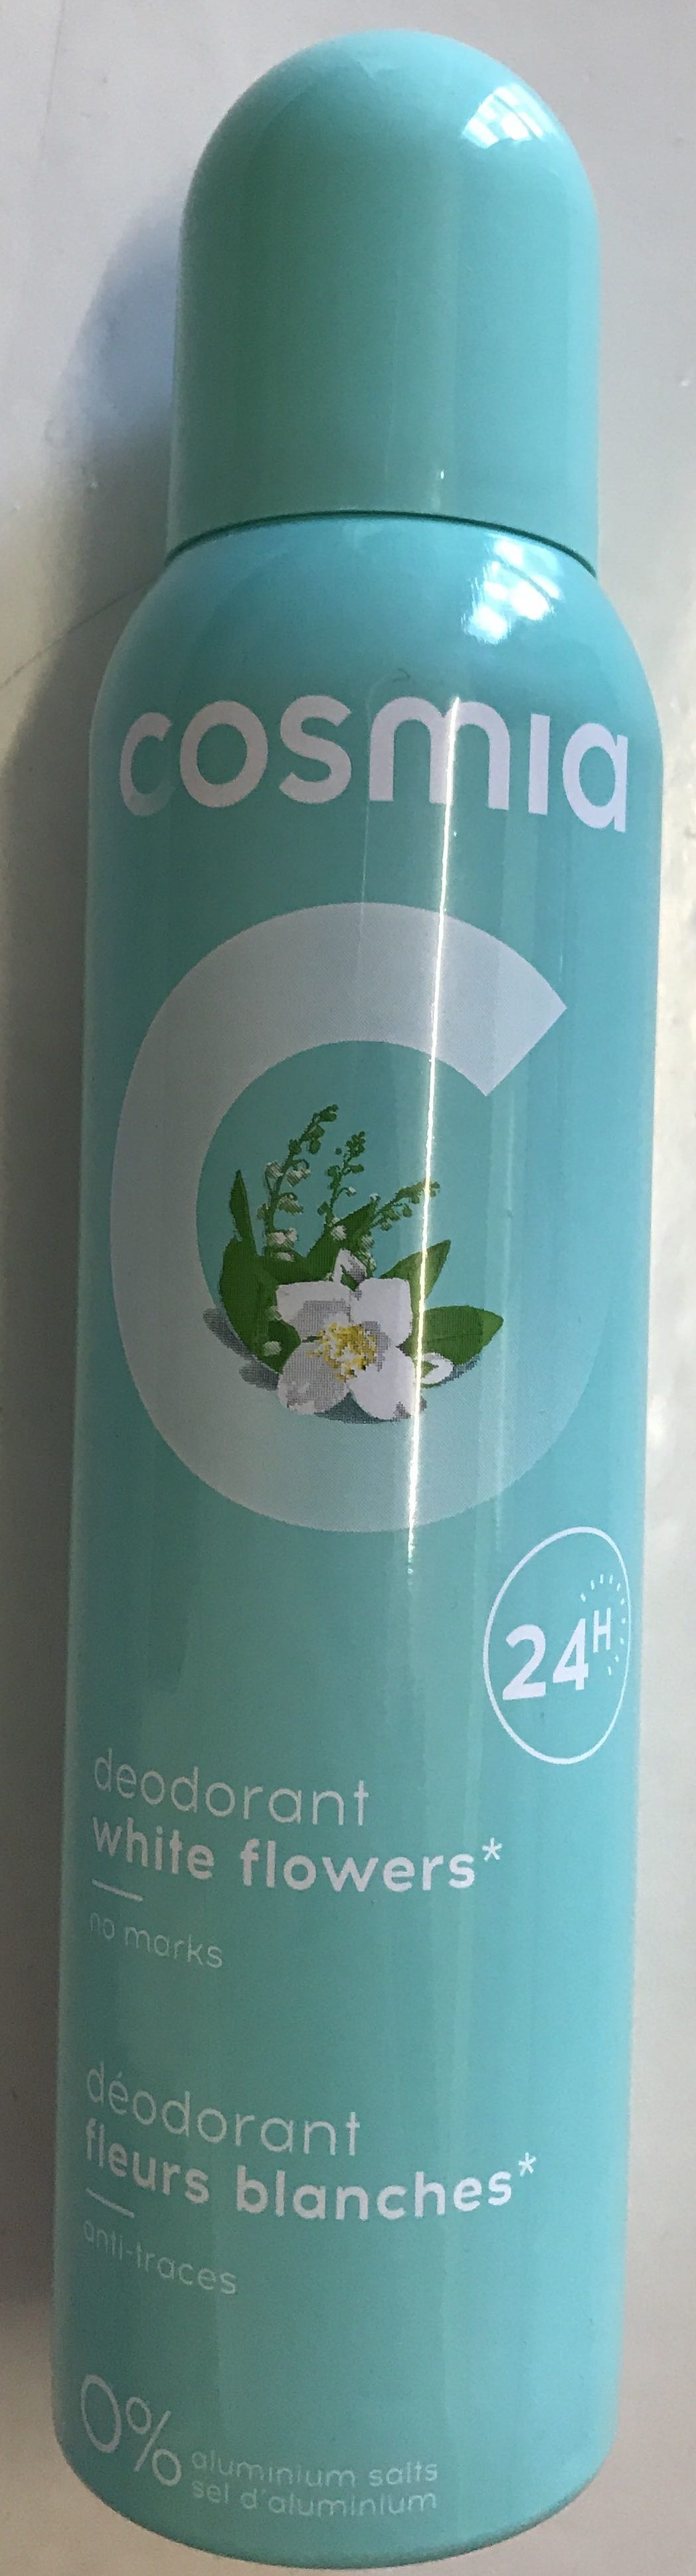 Déodorant fleurs blanches 24H - Produkt - fr